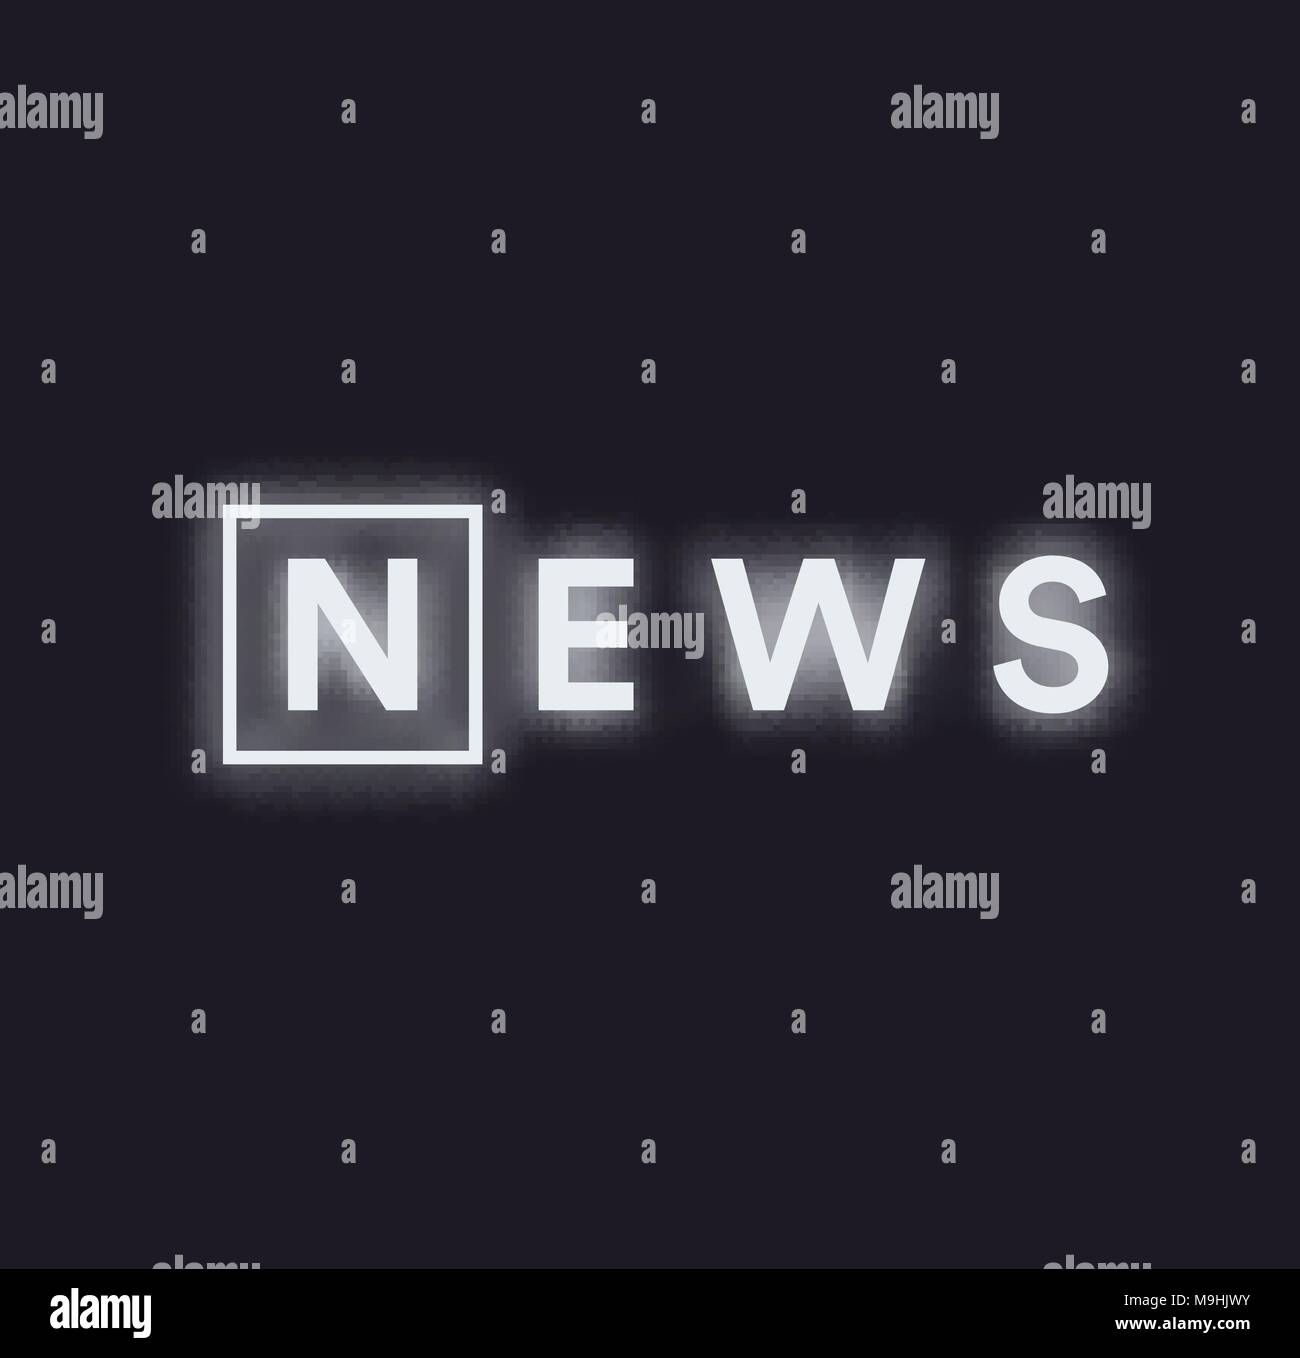 Paranormale Aktivitäten Meldung Logo. Monochrome news feed Konzept, Weiss Neon Text auf schwarzem Hintergrund beleuchtet, Vector Illustration. Stock Vektor